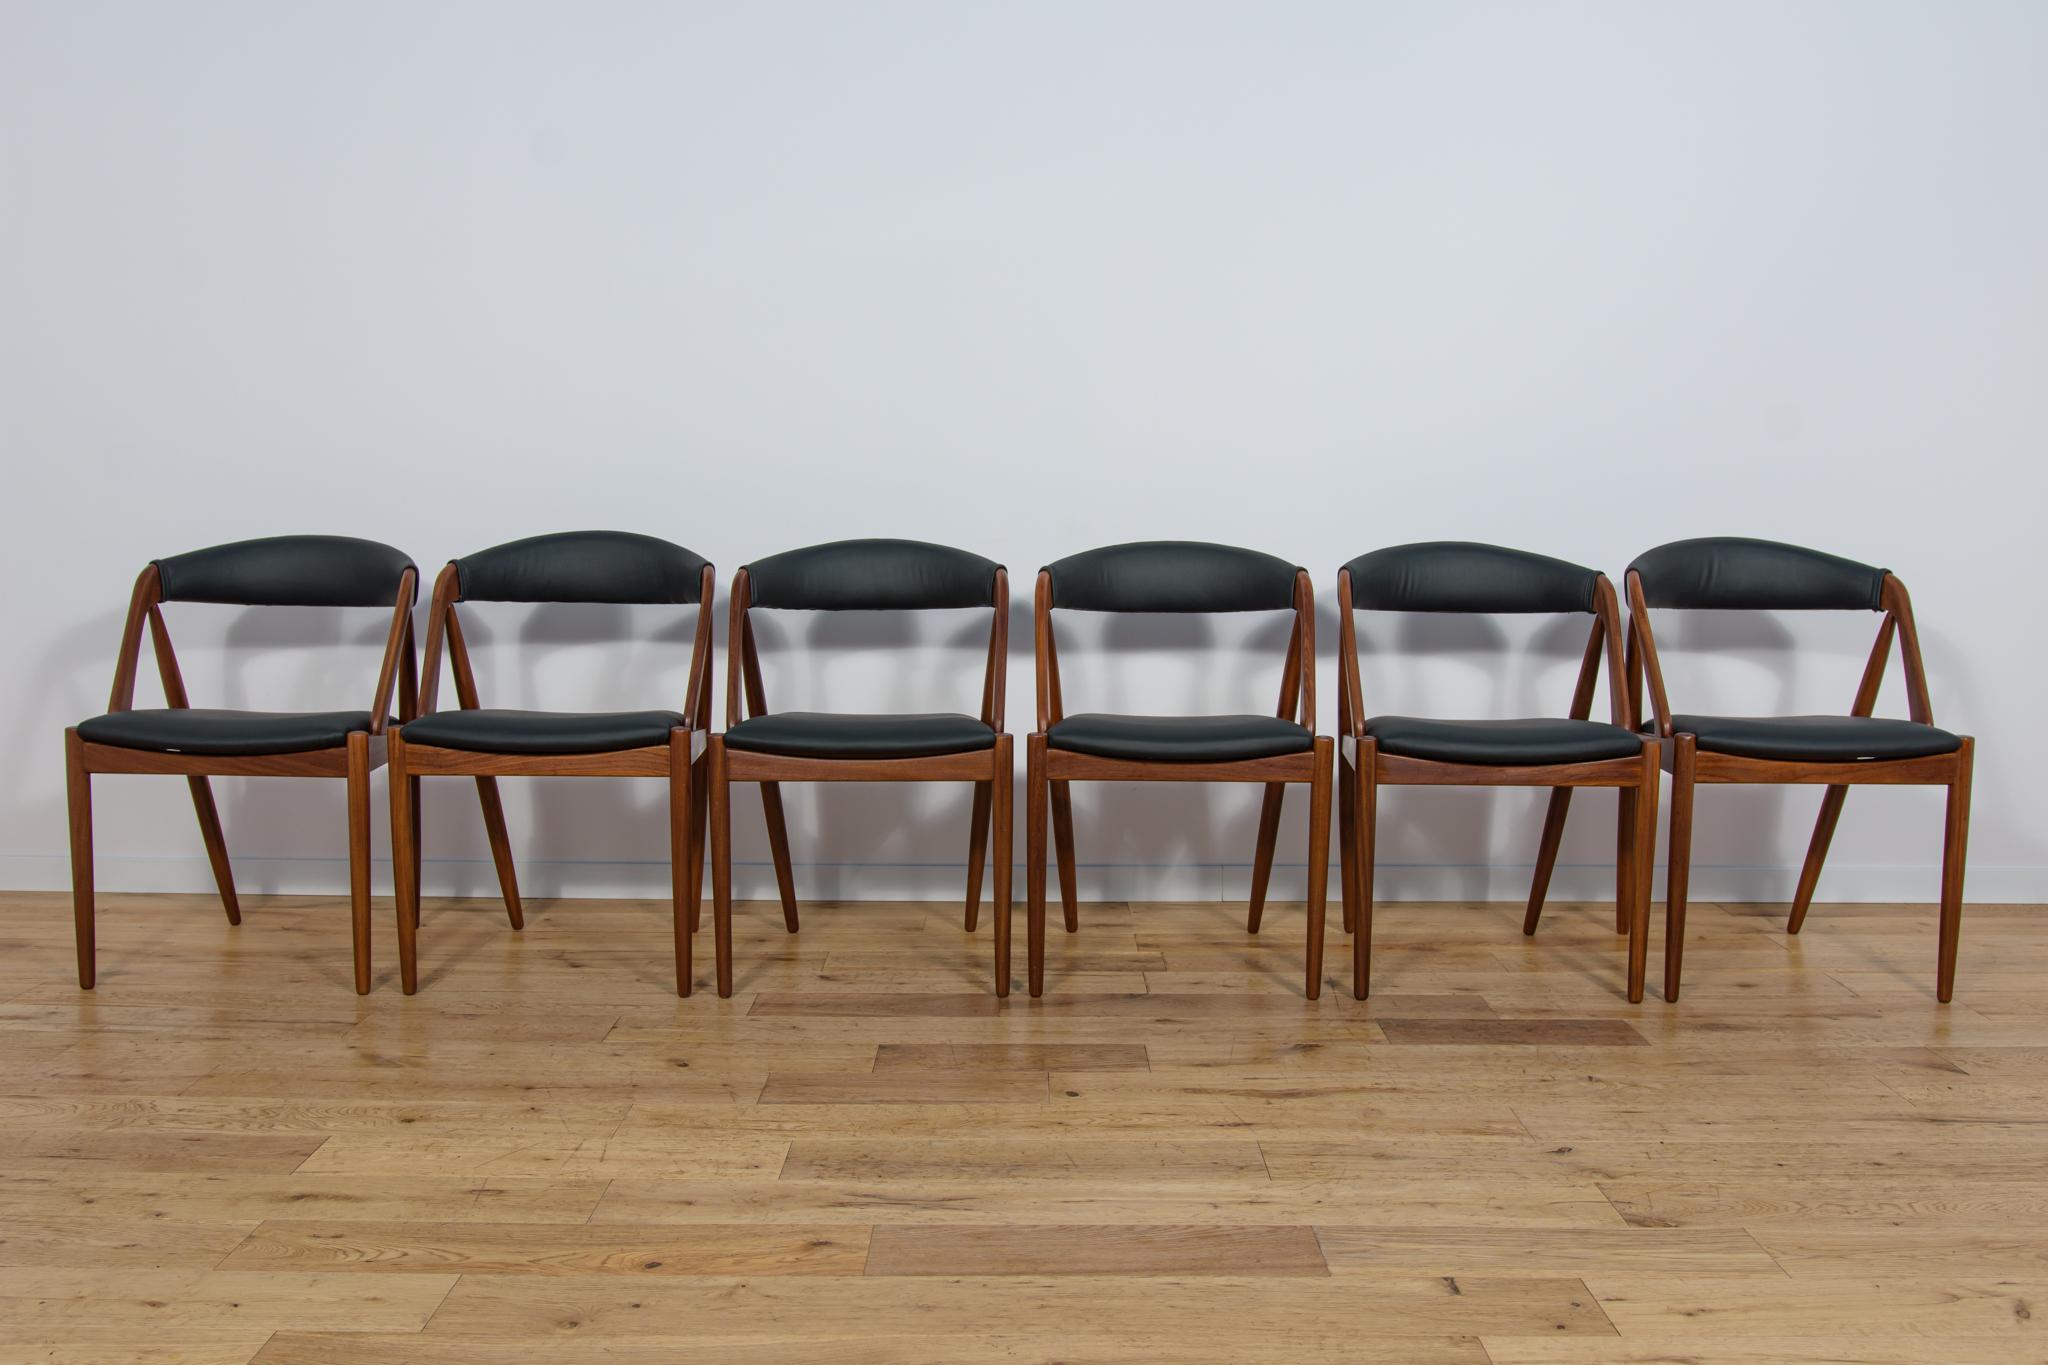 Ein Satz von sechs Stühlen Modell 31, entworfen von Kai Kristiansen für die dänische Manufaktur Schou-Andersens Møbelfabrik in den 1960er Jahren. Der Rahmen ist aus Teakholz gefertigt. Vollständig restauriert. Das Holz wurde vom alten Anstrich